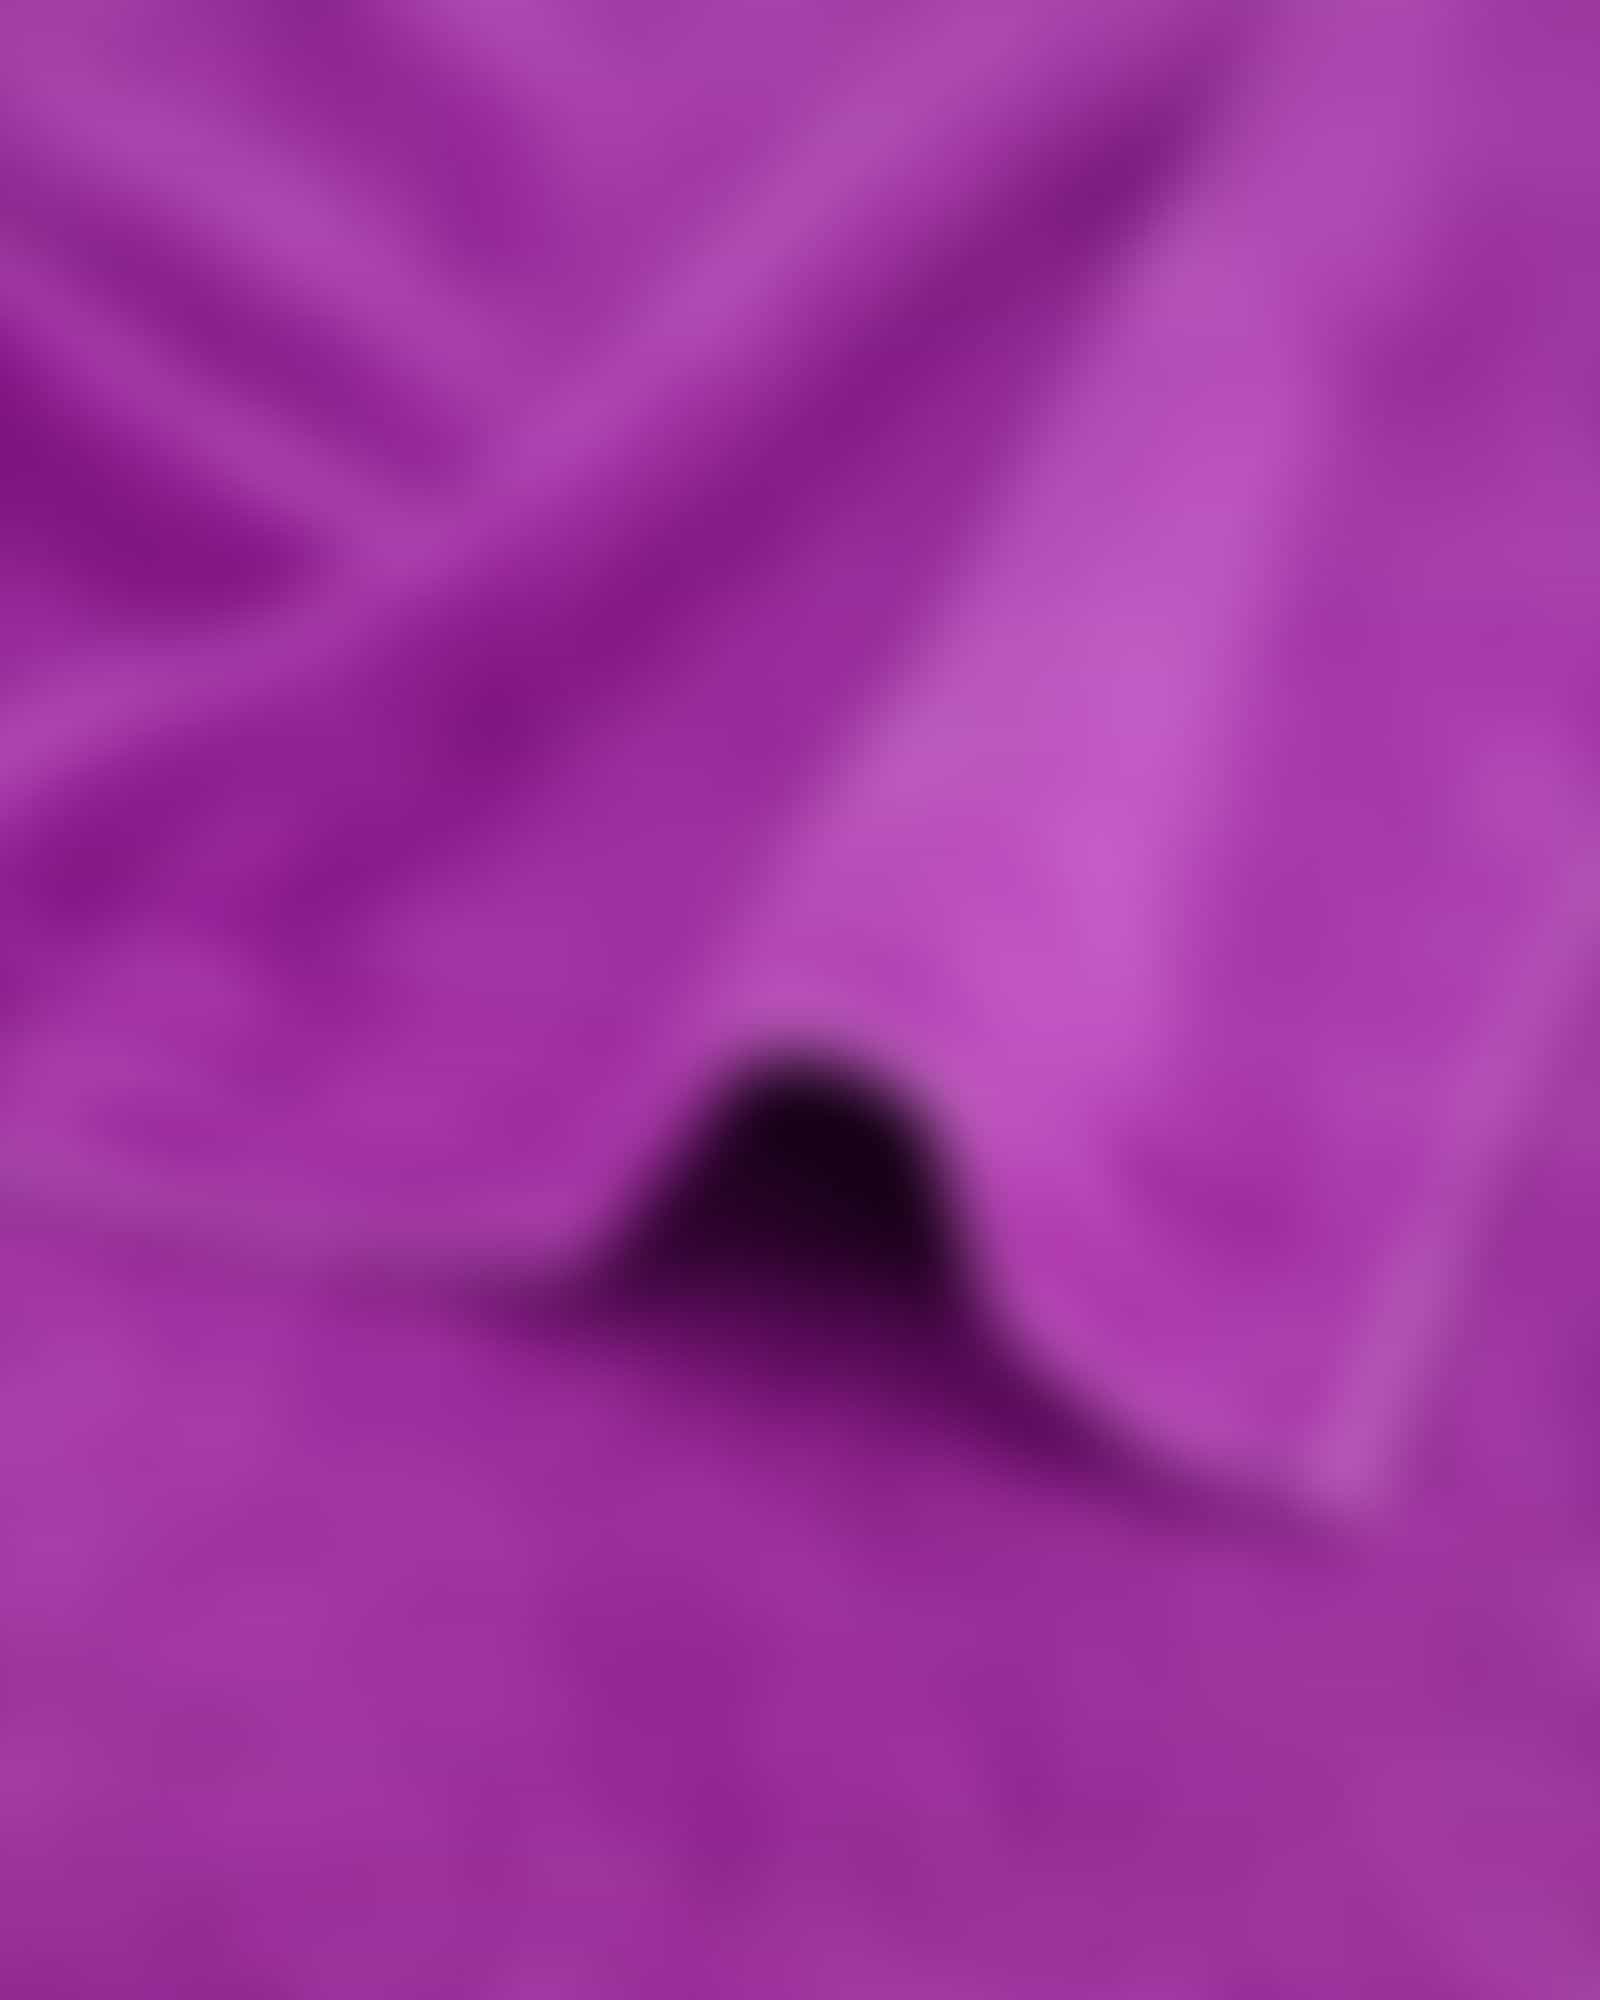 Vossen Handtücher Calypso Feeling - Farbe: lollipop - 8460 - Duschtuch 67x140 cm